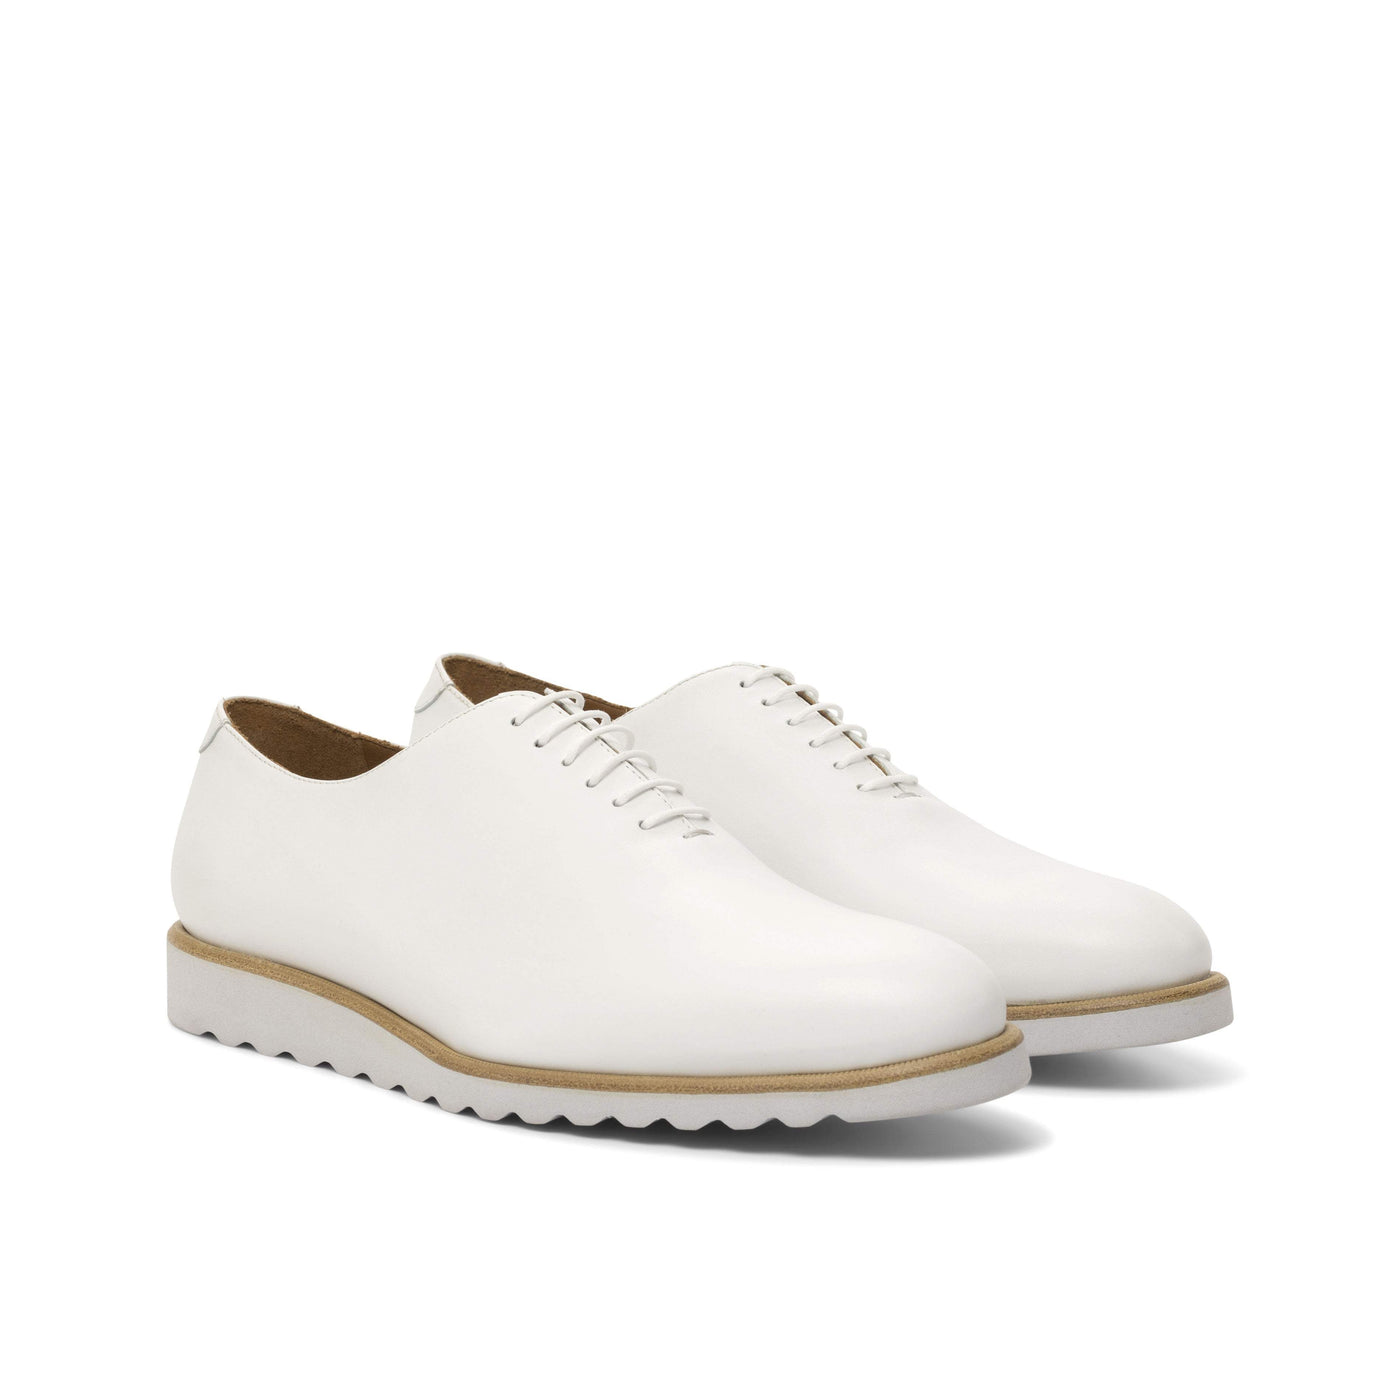 Men's Wholecut Shoes Leather White 4755 3- MERRIMIUM